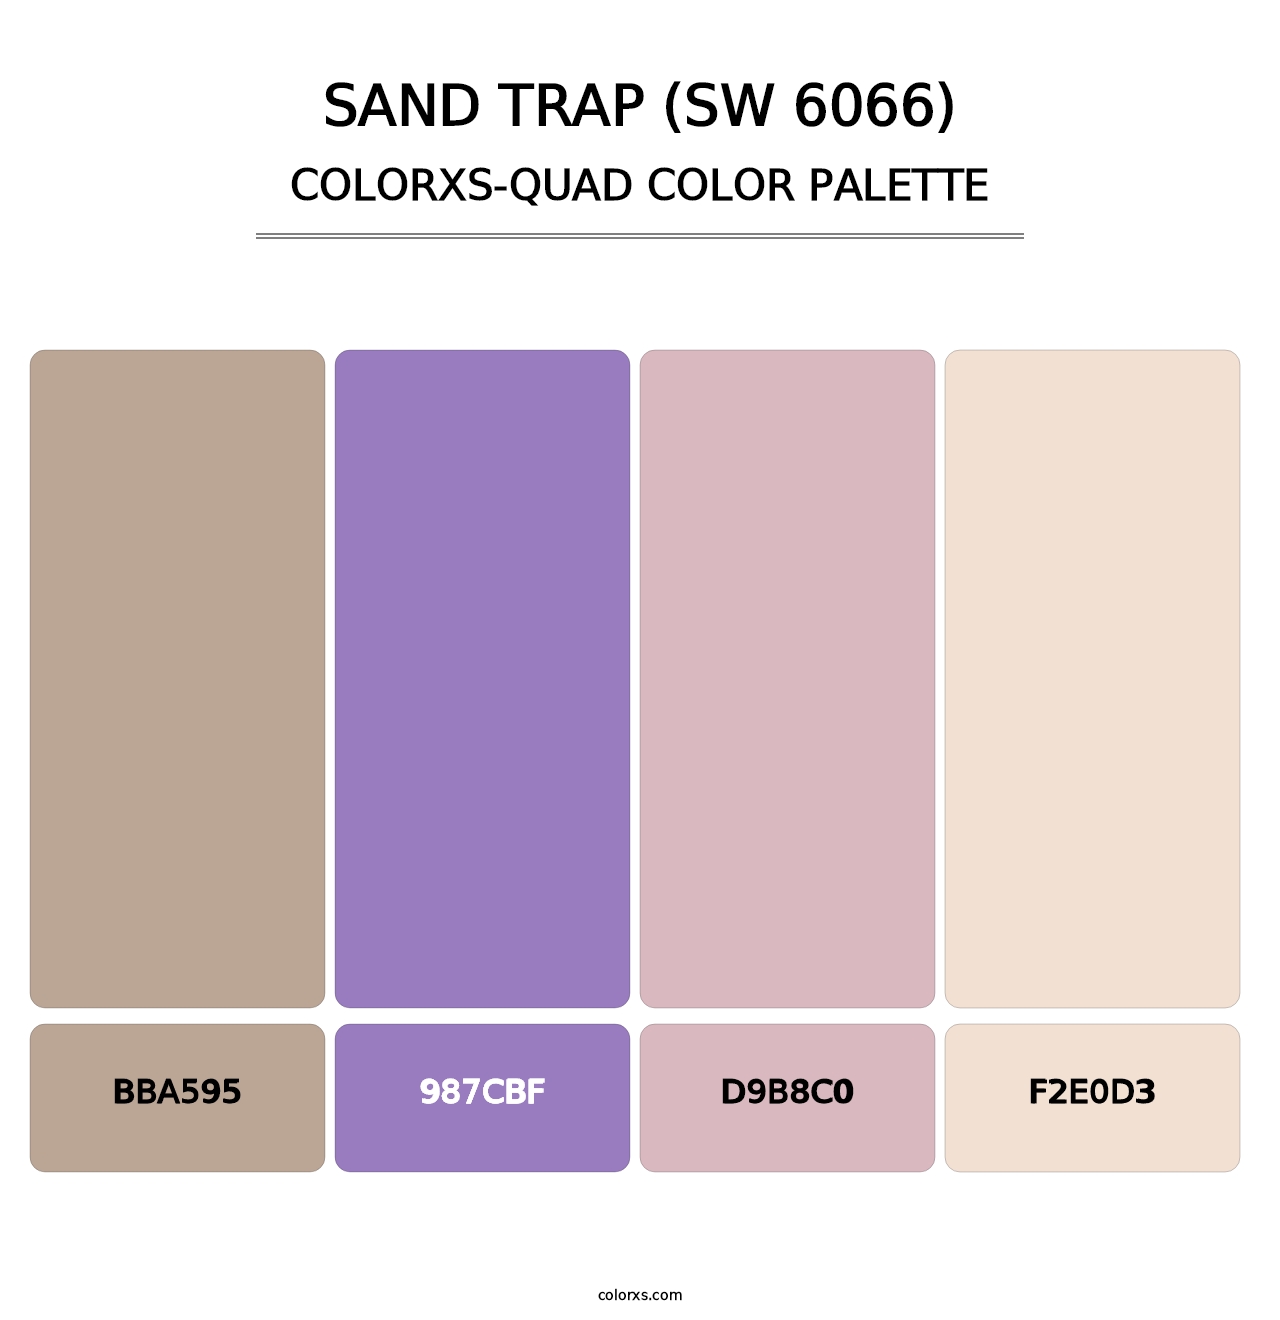 Sand Trap (SW 6066) - Colorxs Quad Palette